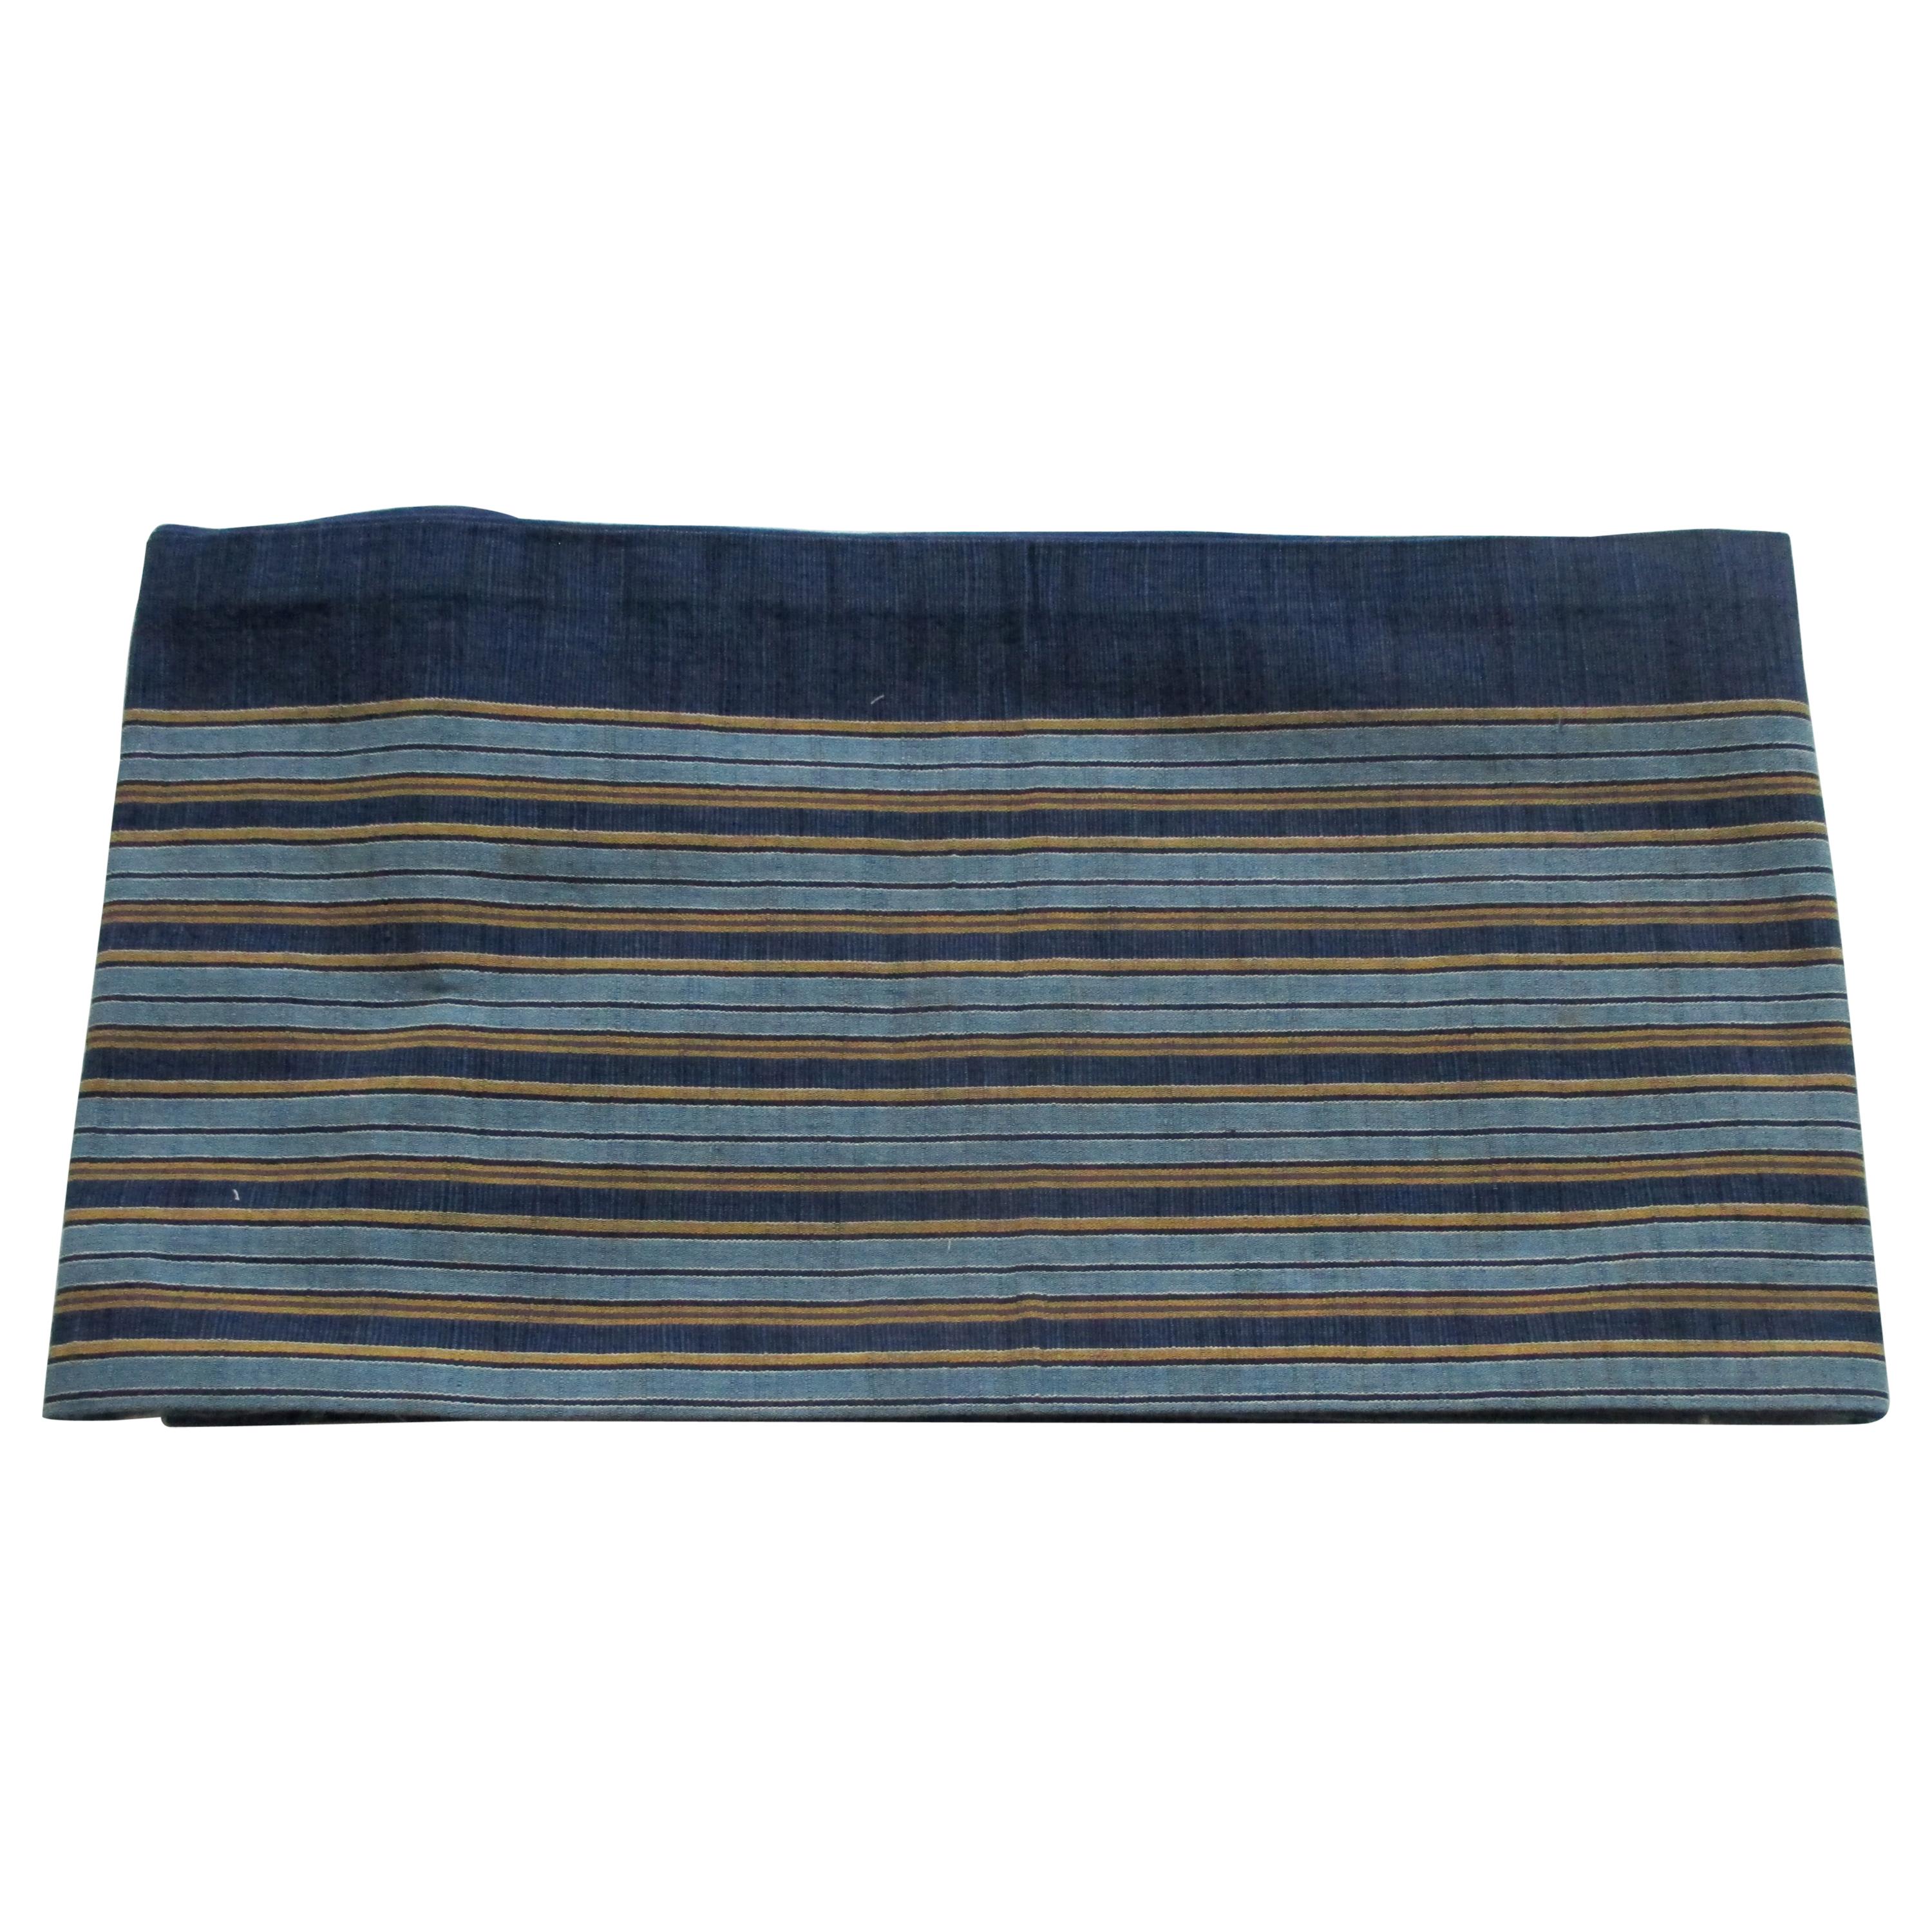 Vintage Obi Textile Blue with Yellow Stripes